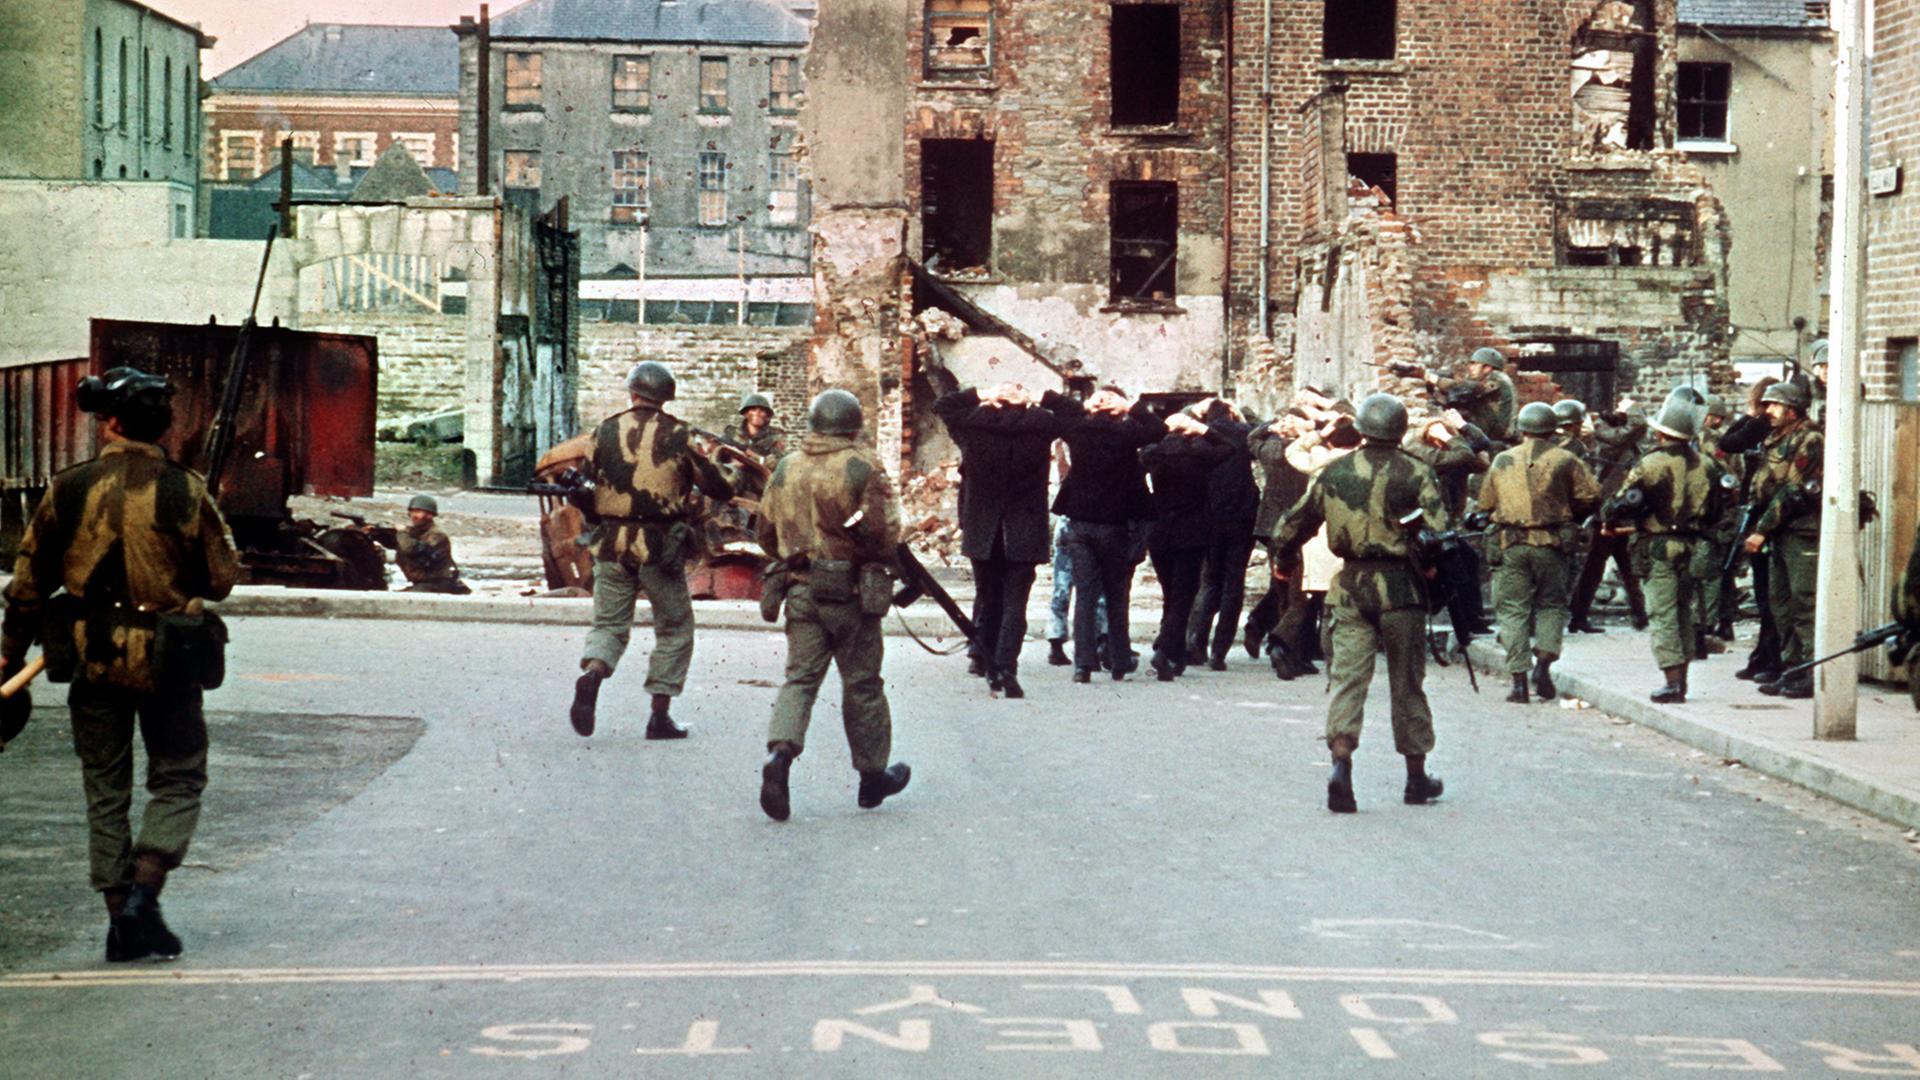 Am 30. Januar 1972 wurden 13 katholische Demonstranten während einer friedlichen, jedoch verbotenen Kundgebung in der nordirischen Stadt Londonderry von britischen Fallschirmjägern erschossen.